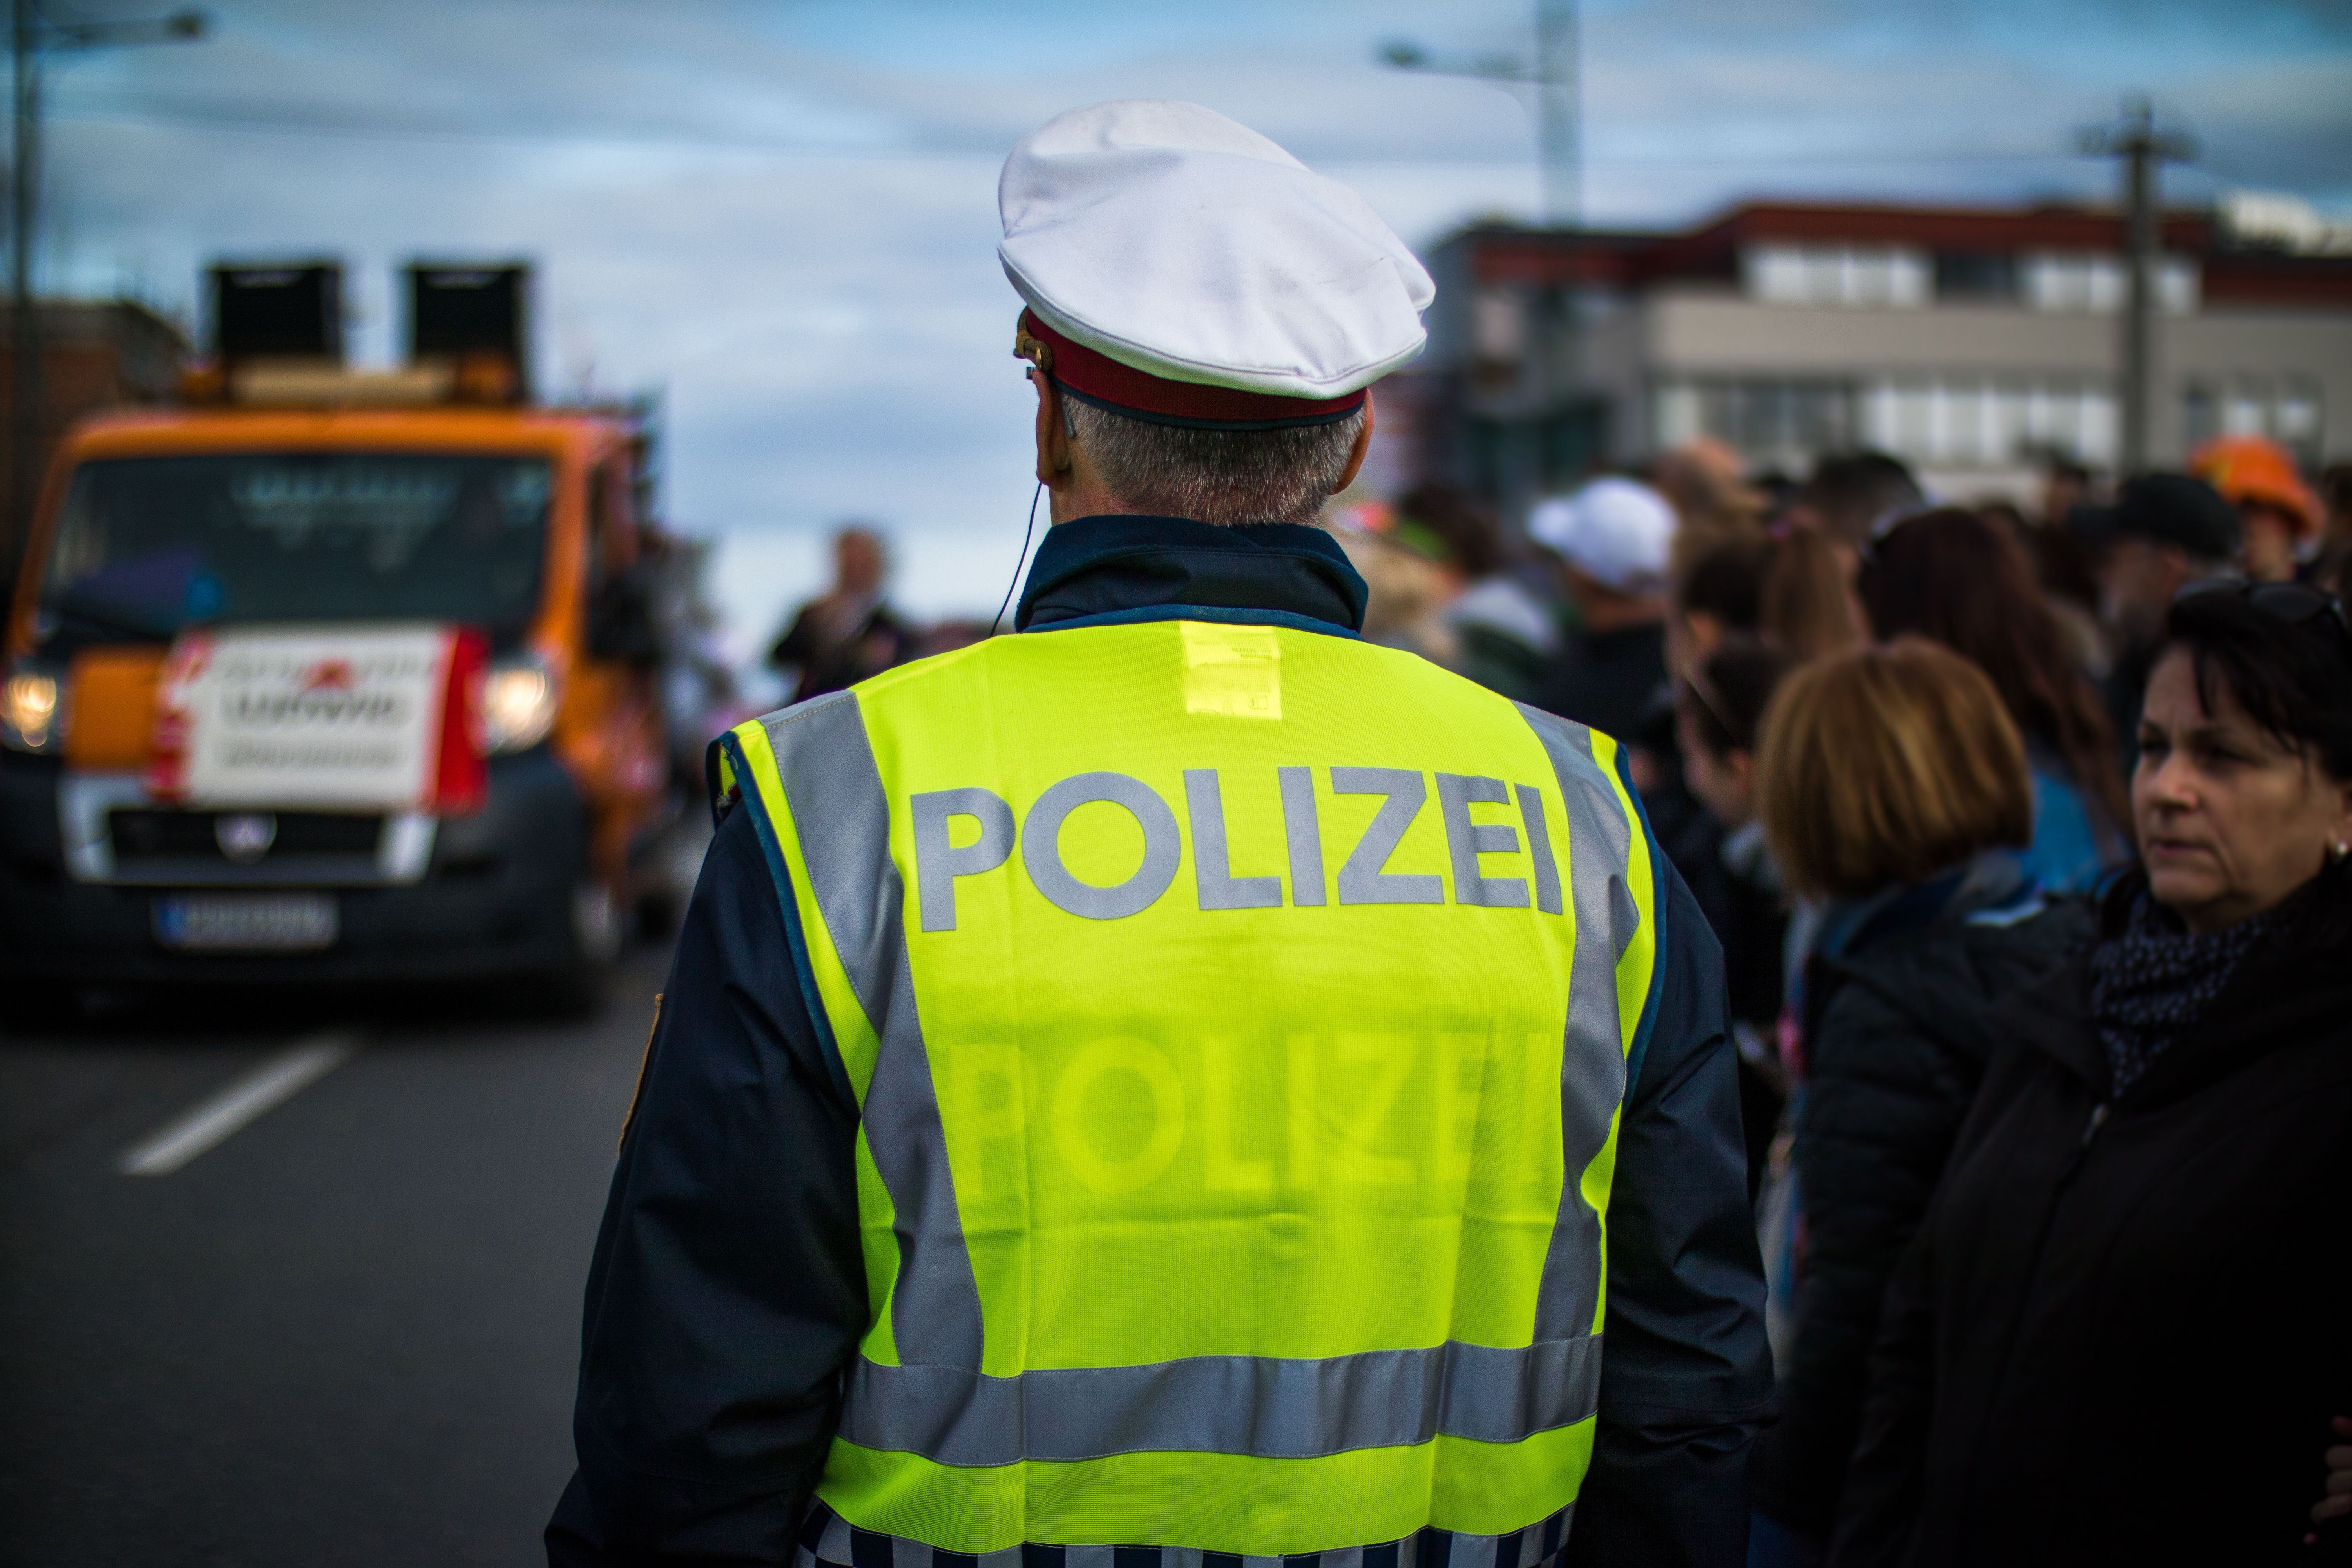 Policía Austria / Flickr